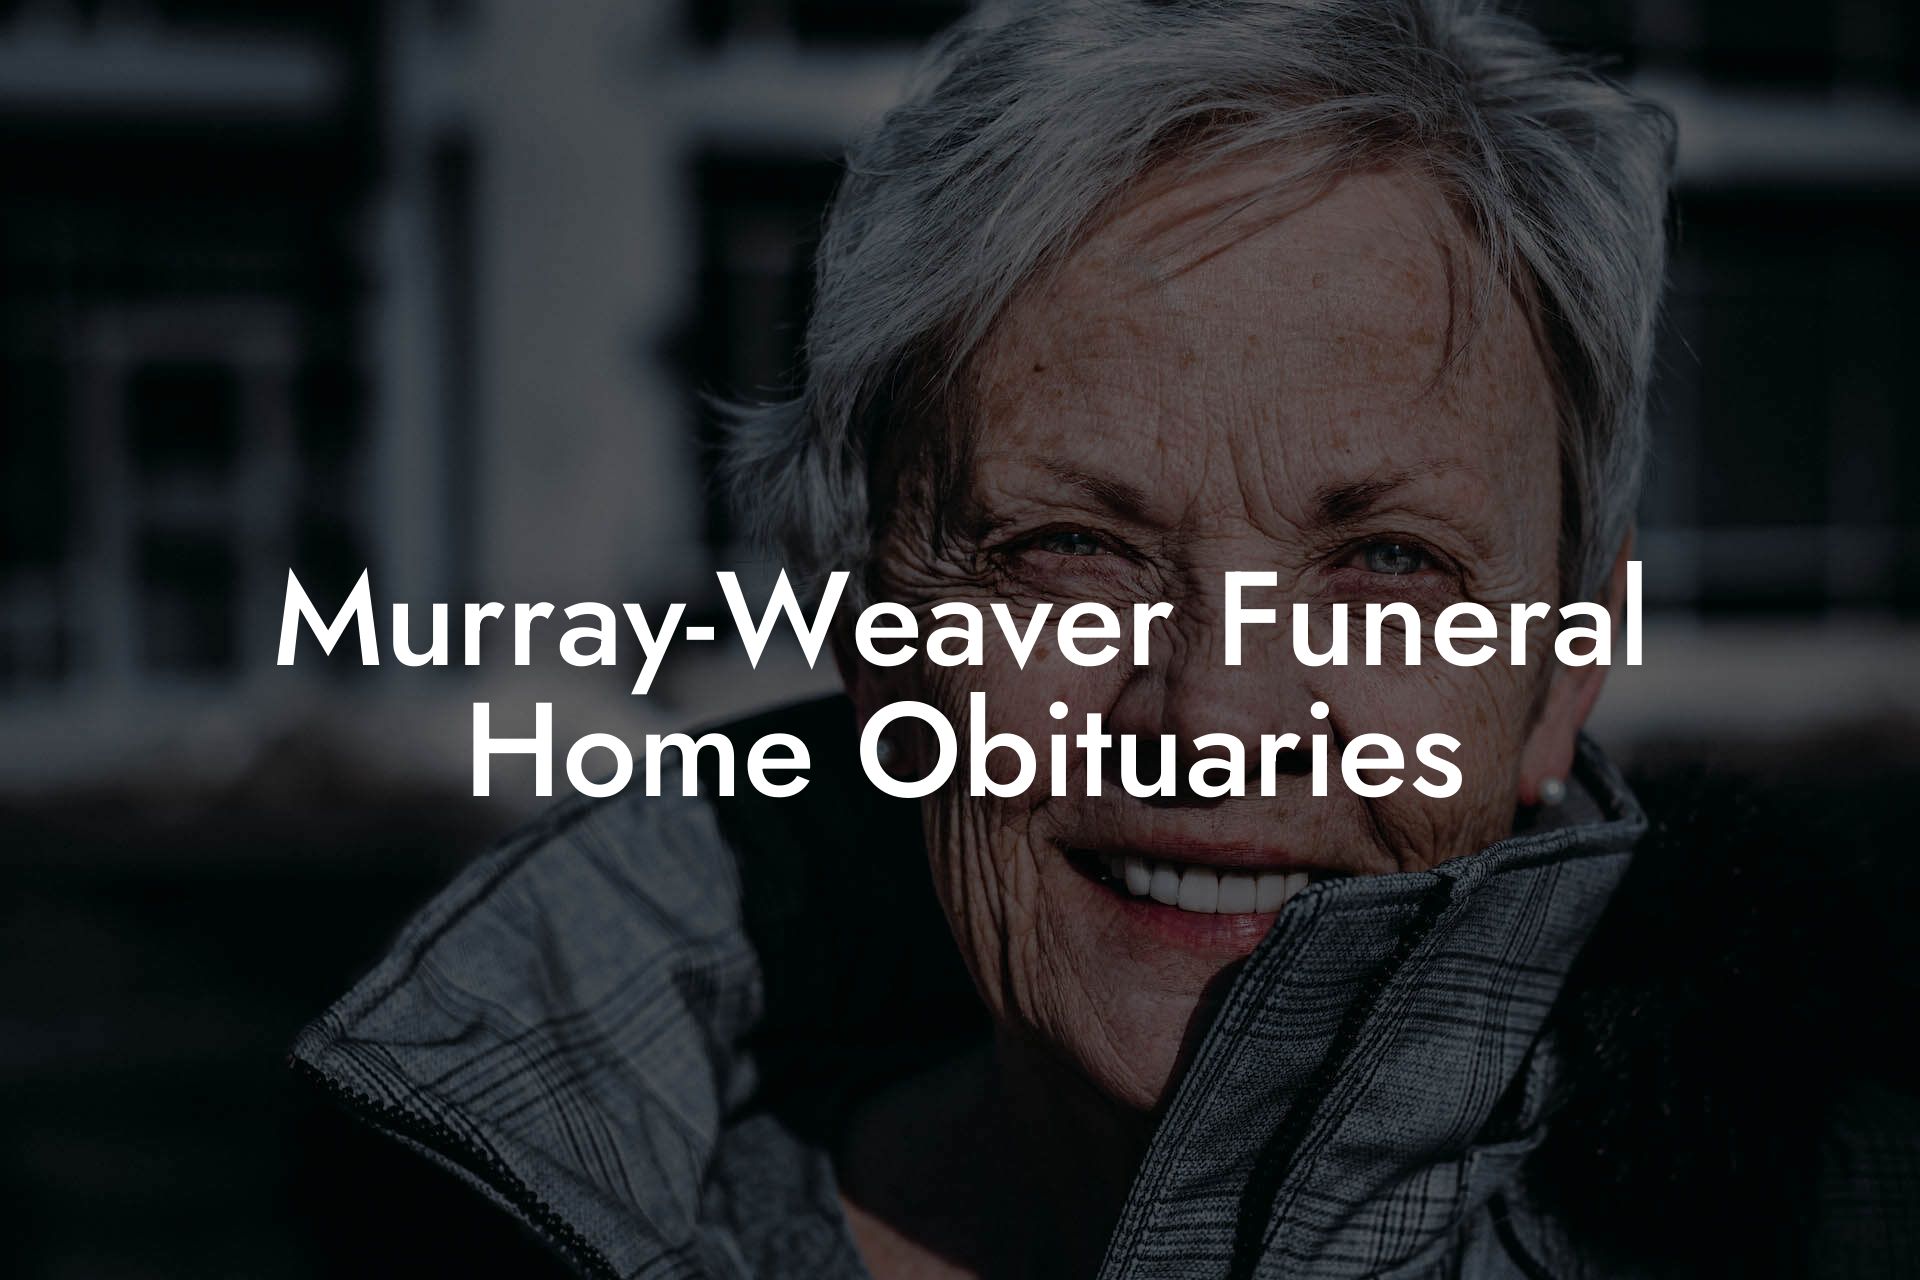 Murray-Weaver Funeral Home Obituaries